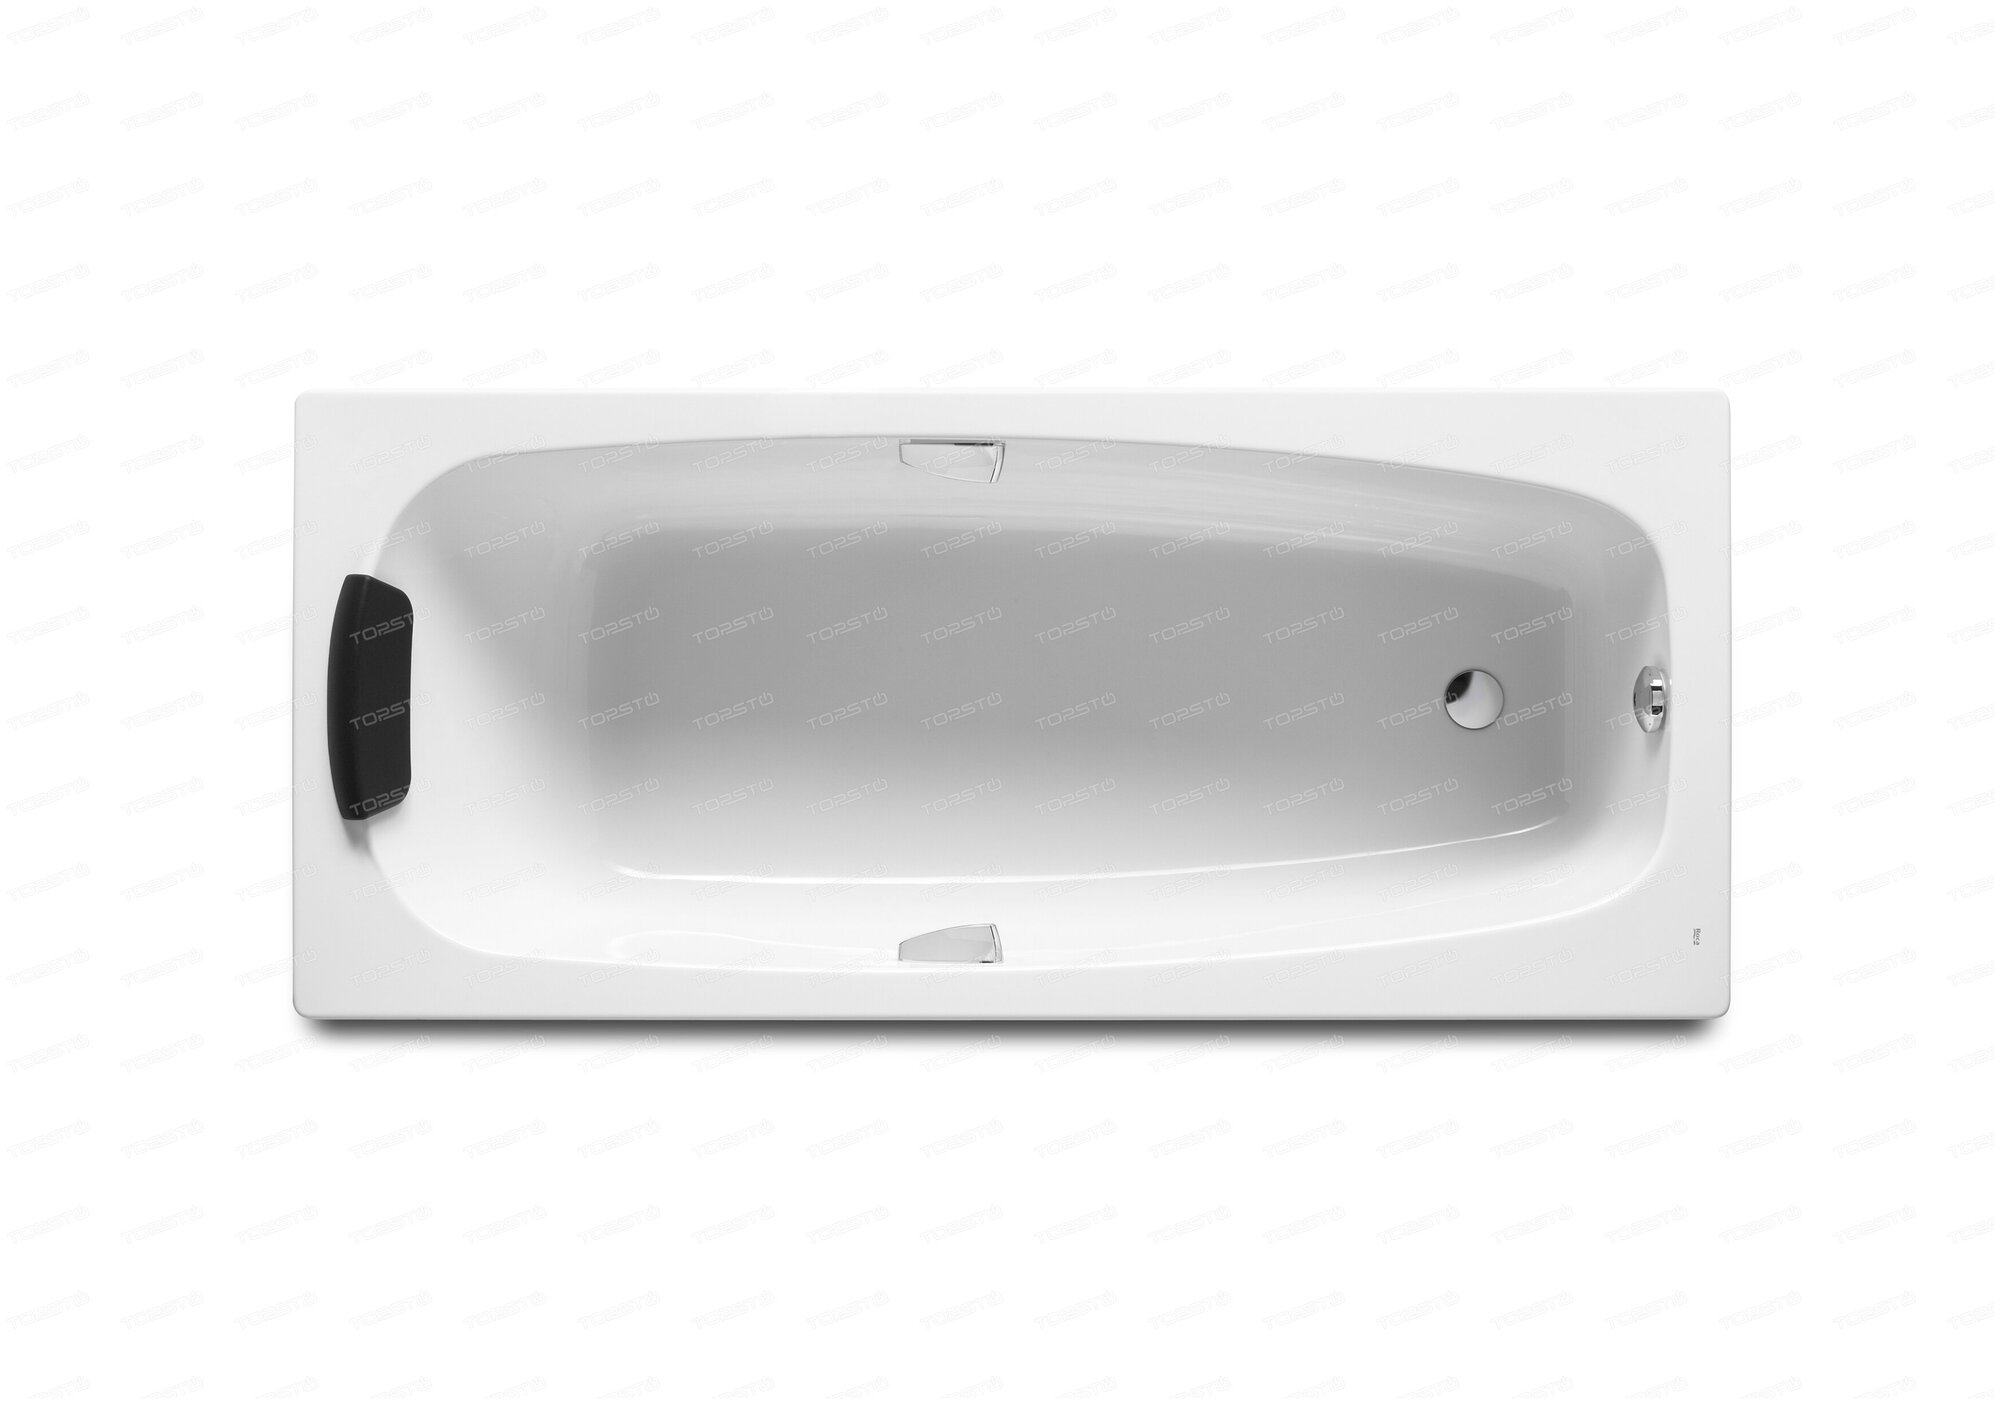 Акриловая ванна ROCA SURESTE 1600x700 ZRU9302787